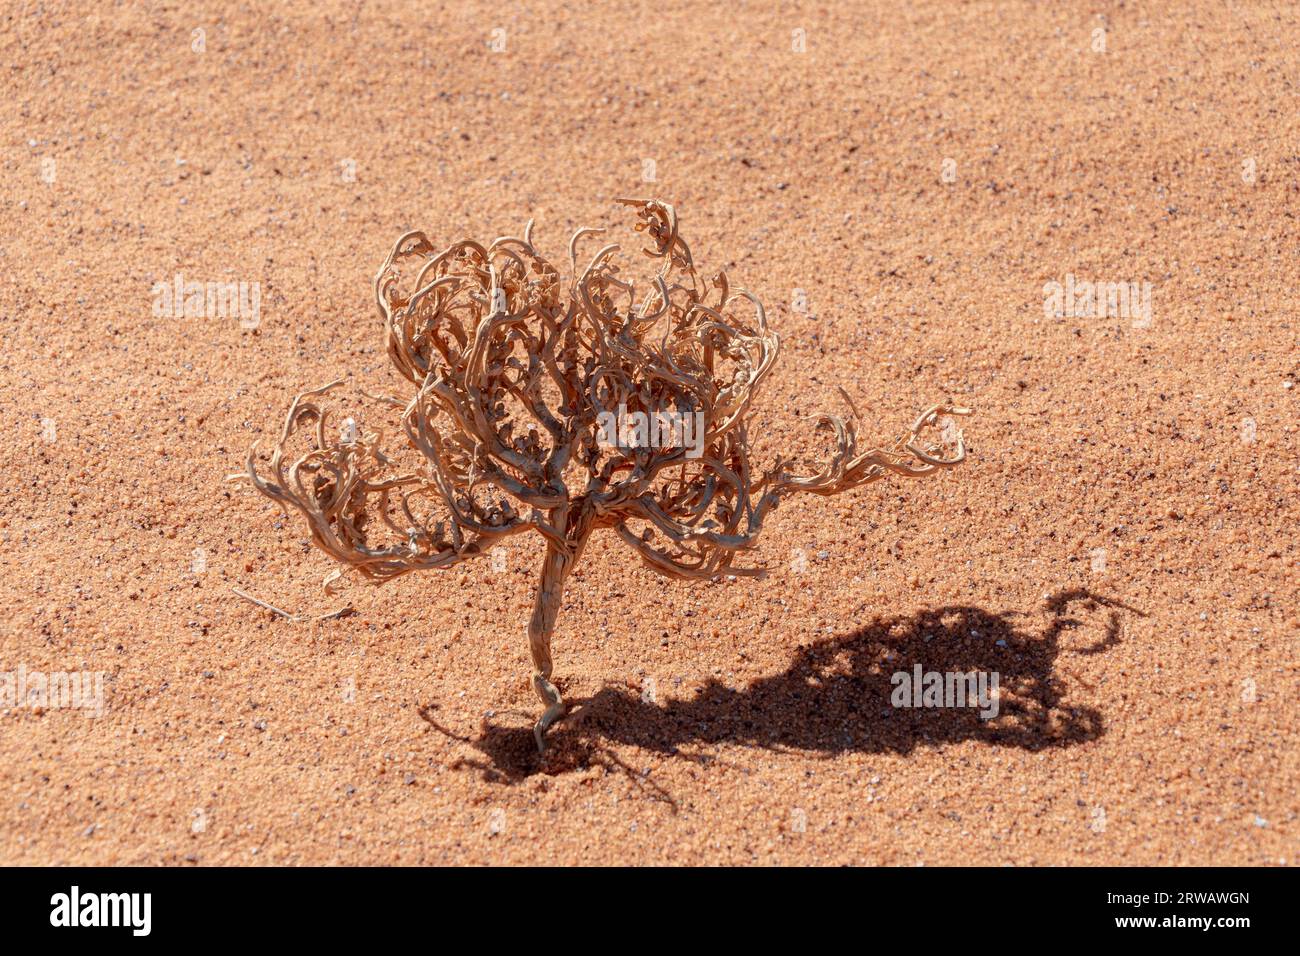 Dry plant in the Sahara desert Stock Photo